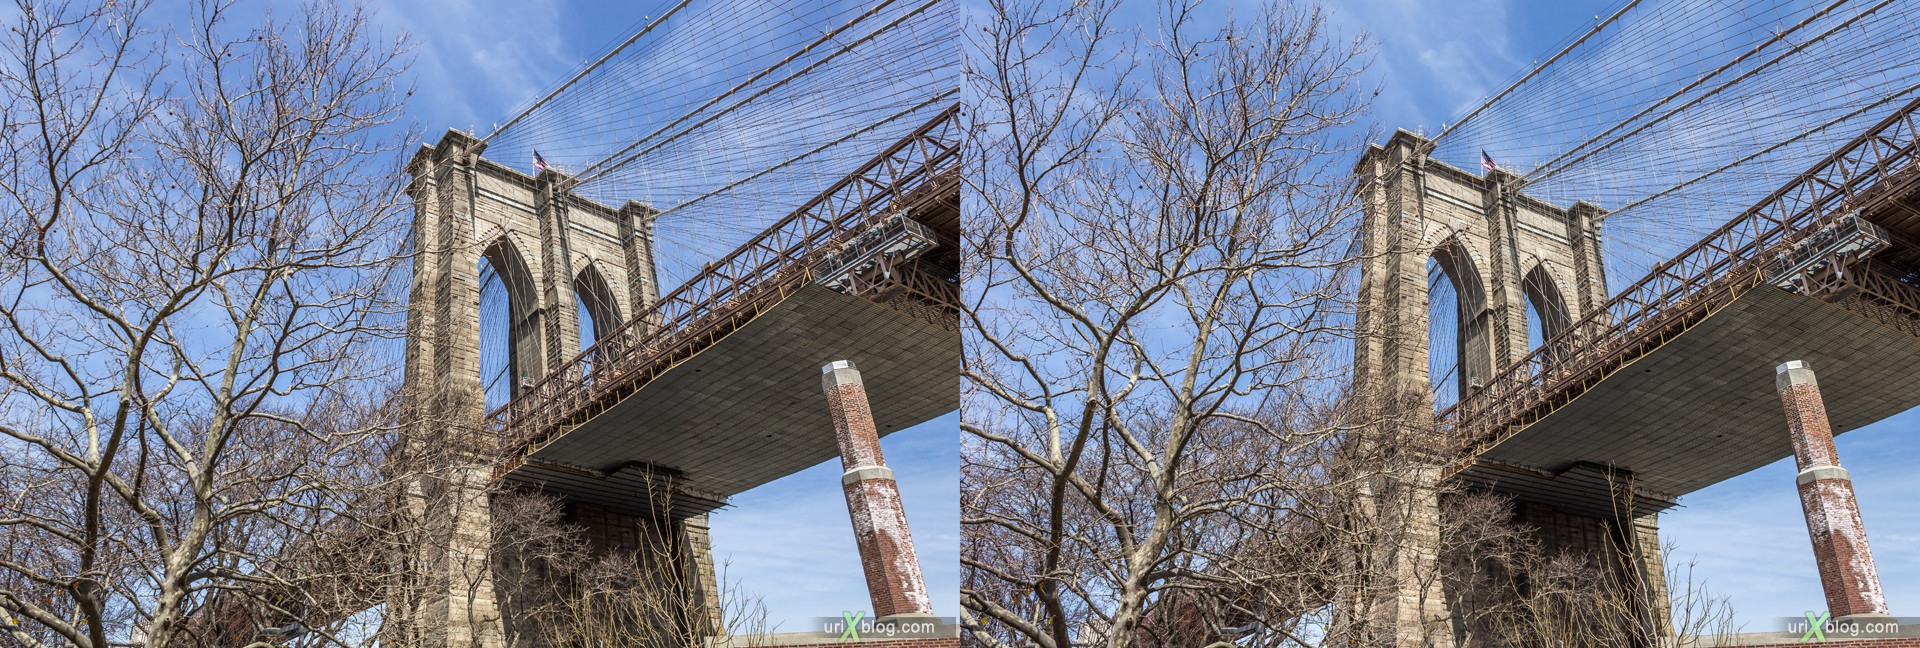 2013, Бруклинский мост, Нью-Йорк, США, 3D, перекрёстные стереопары, стерео, стереопара, стереопары